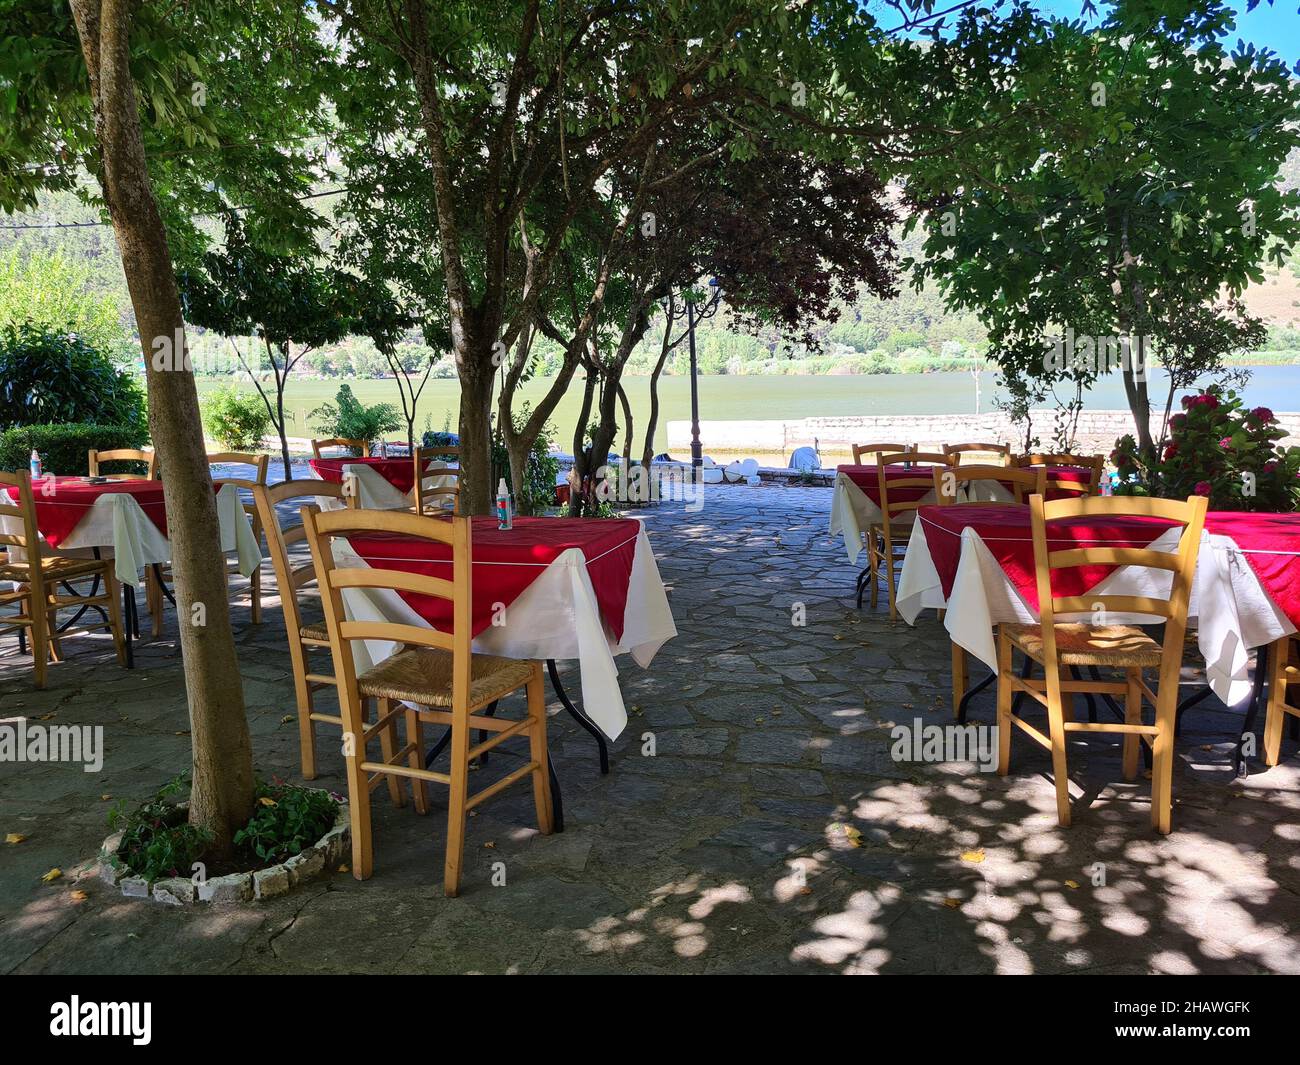 Ioannina, Grecia - 27 giugno 2021: Tavoli con spray per la disinfezione durante la pandemia corona nella zona giardino di un ristorante Foto Stock